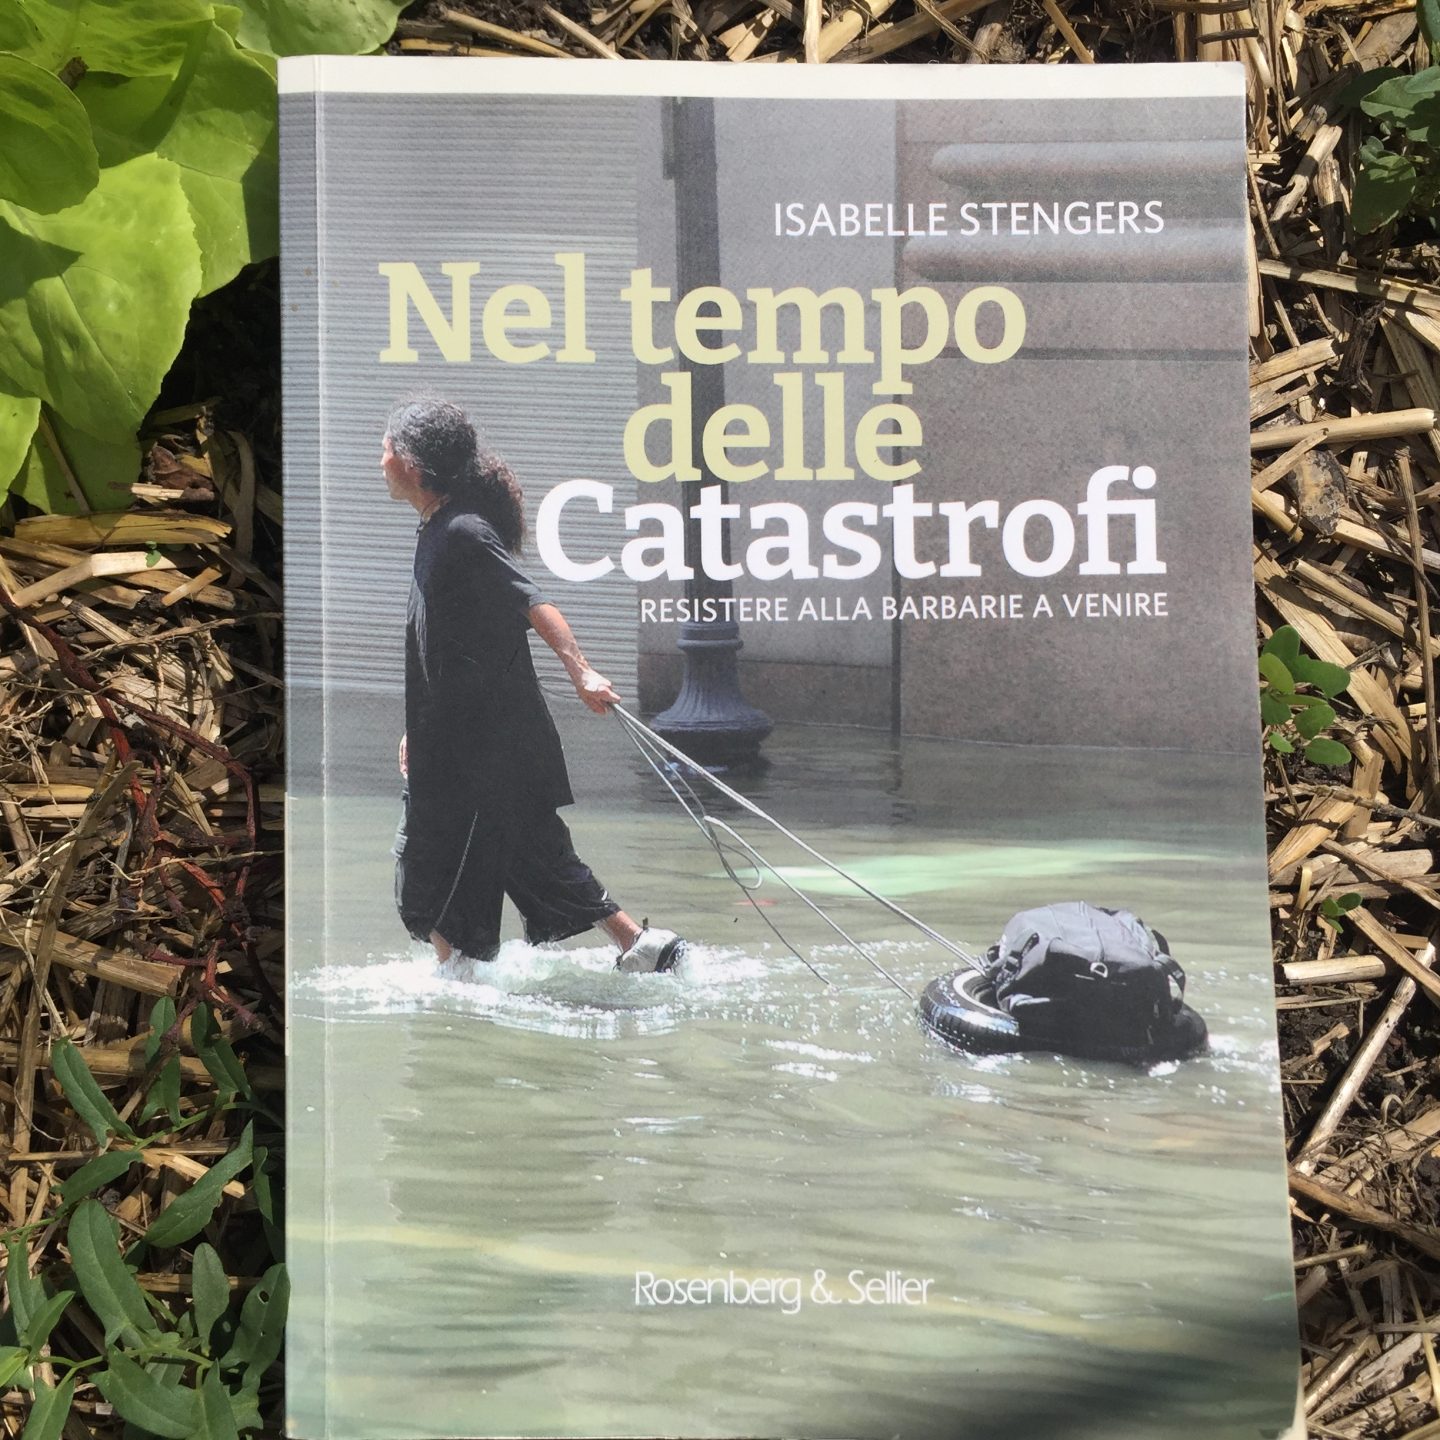 “Nel tempo delle Catastrofi. Resistere alle barbarie a venire” Isabelle Stengers, a cura di Nicola Manghi, Rosenberg & Sellier, 2021.